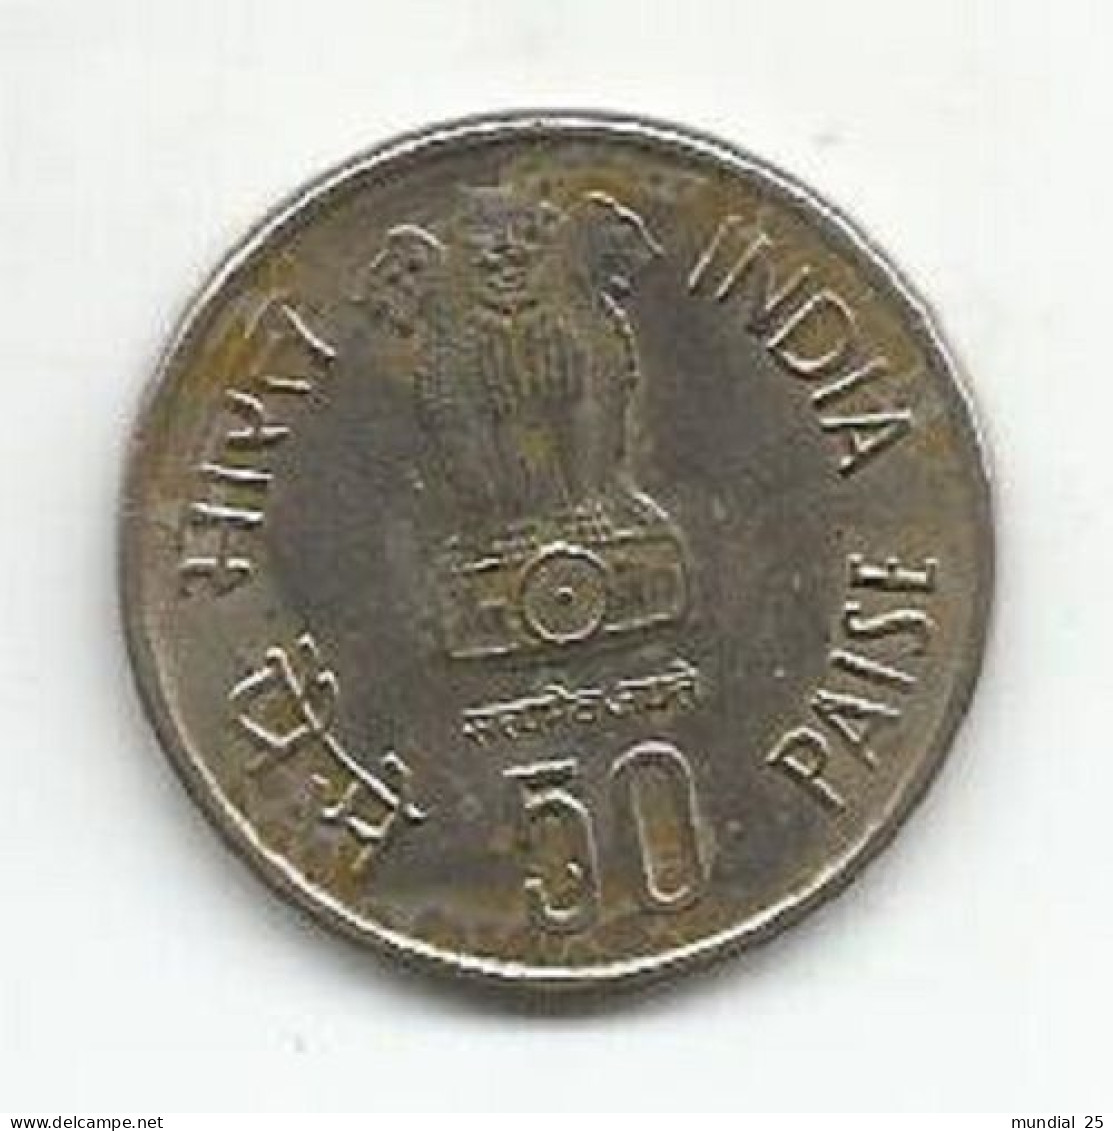 INDIA 50 PAISE 1986 - F.A.O. - India